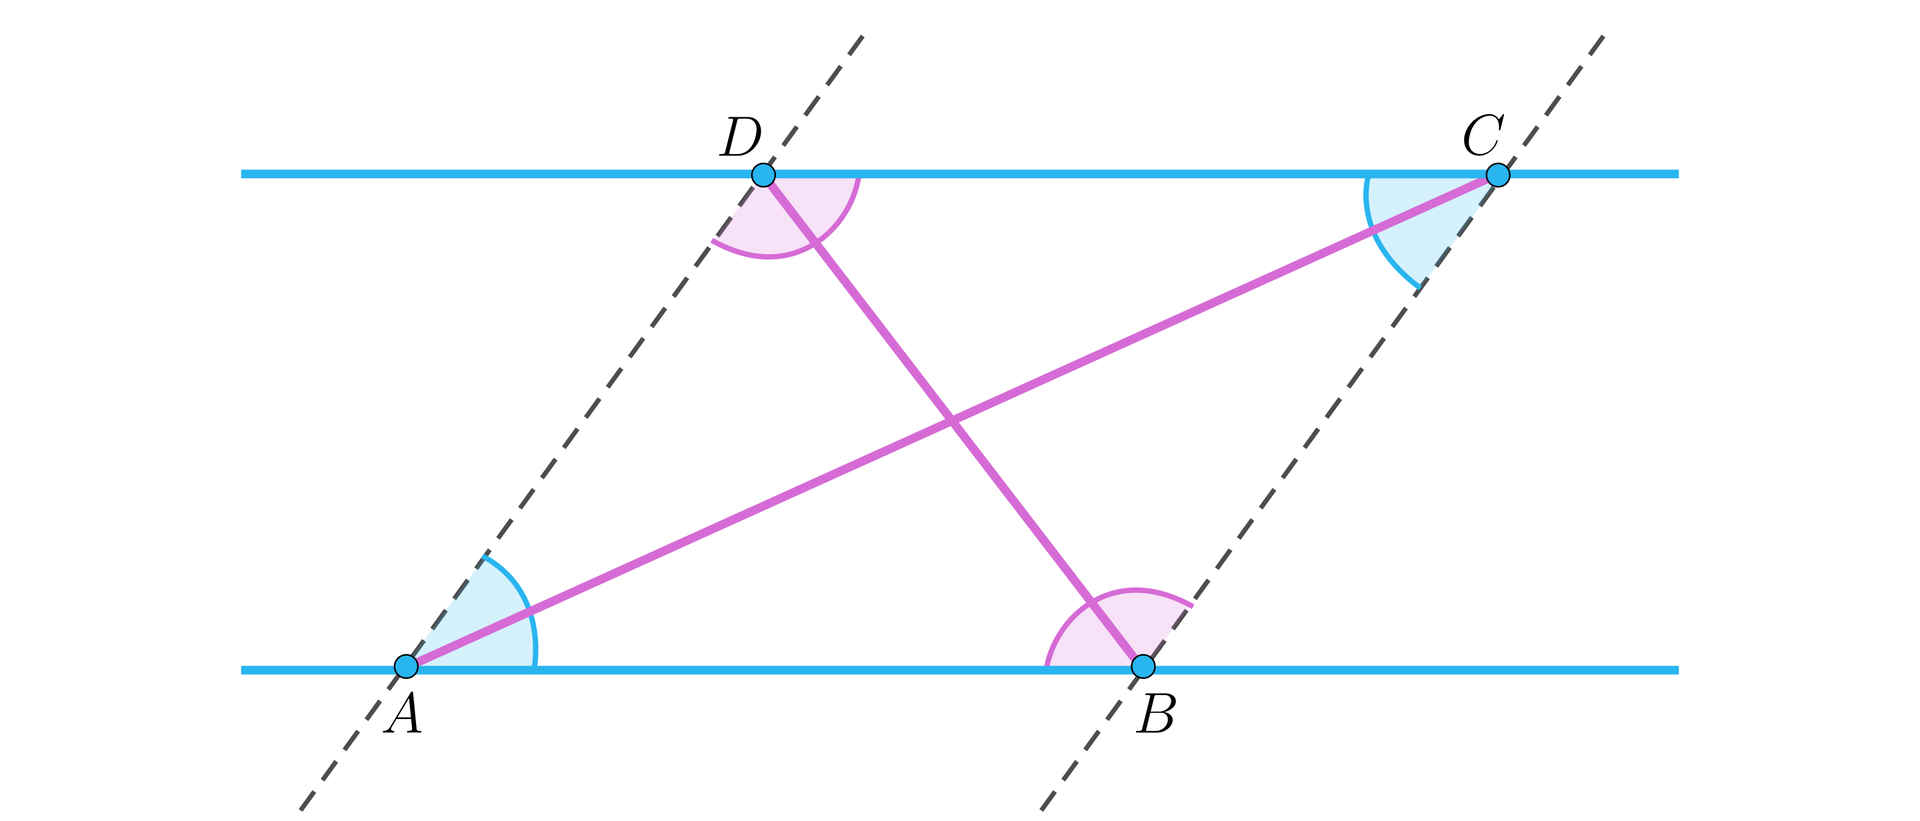 Ilustracja przedstawia równoległobok ABCD osadzony na dwóch równoległych prostych. Czworokąt posiada przekątne przecinające się, znajdujące się wewnątrz figury. Czworokąt posiada dwie pary równych kątów leżących naprzeciw siebie: A i C oraz B i D. 